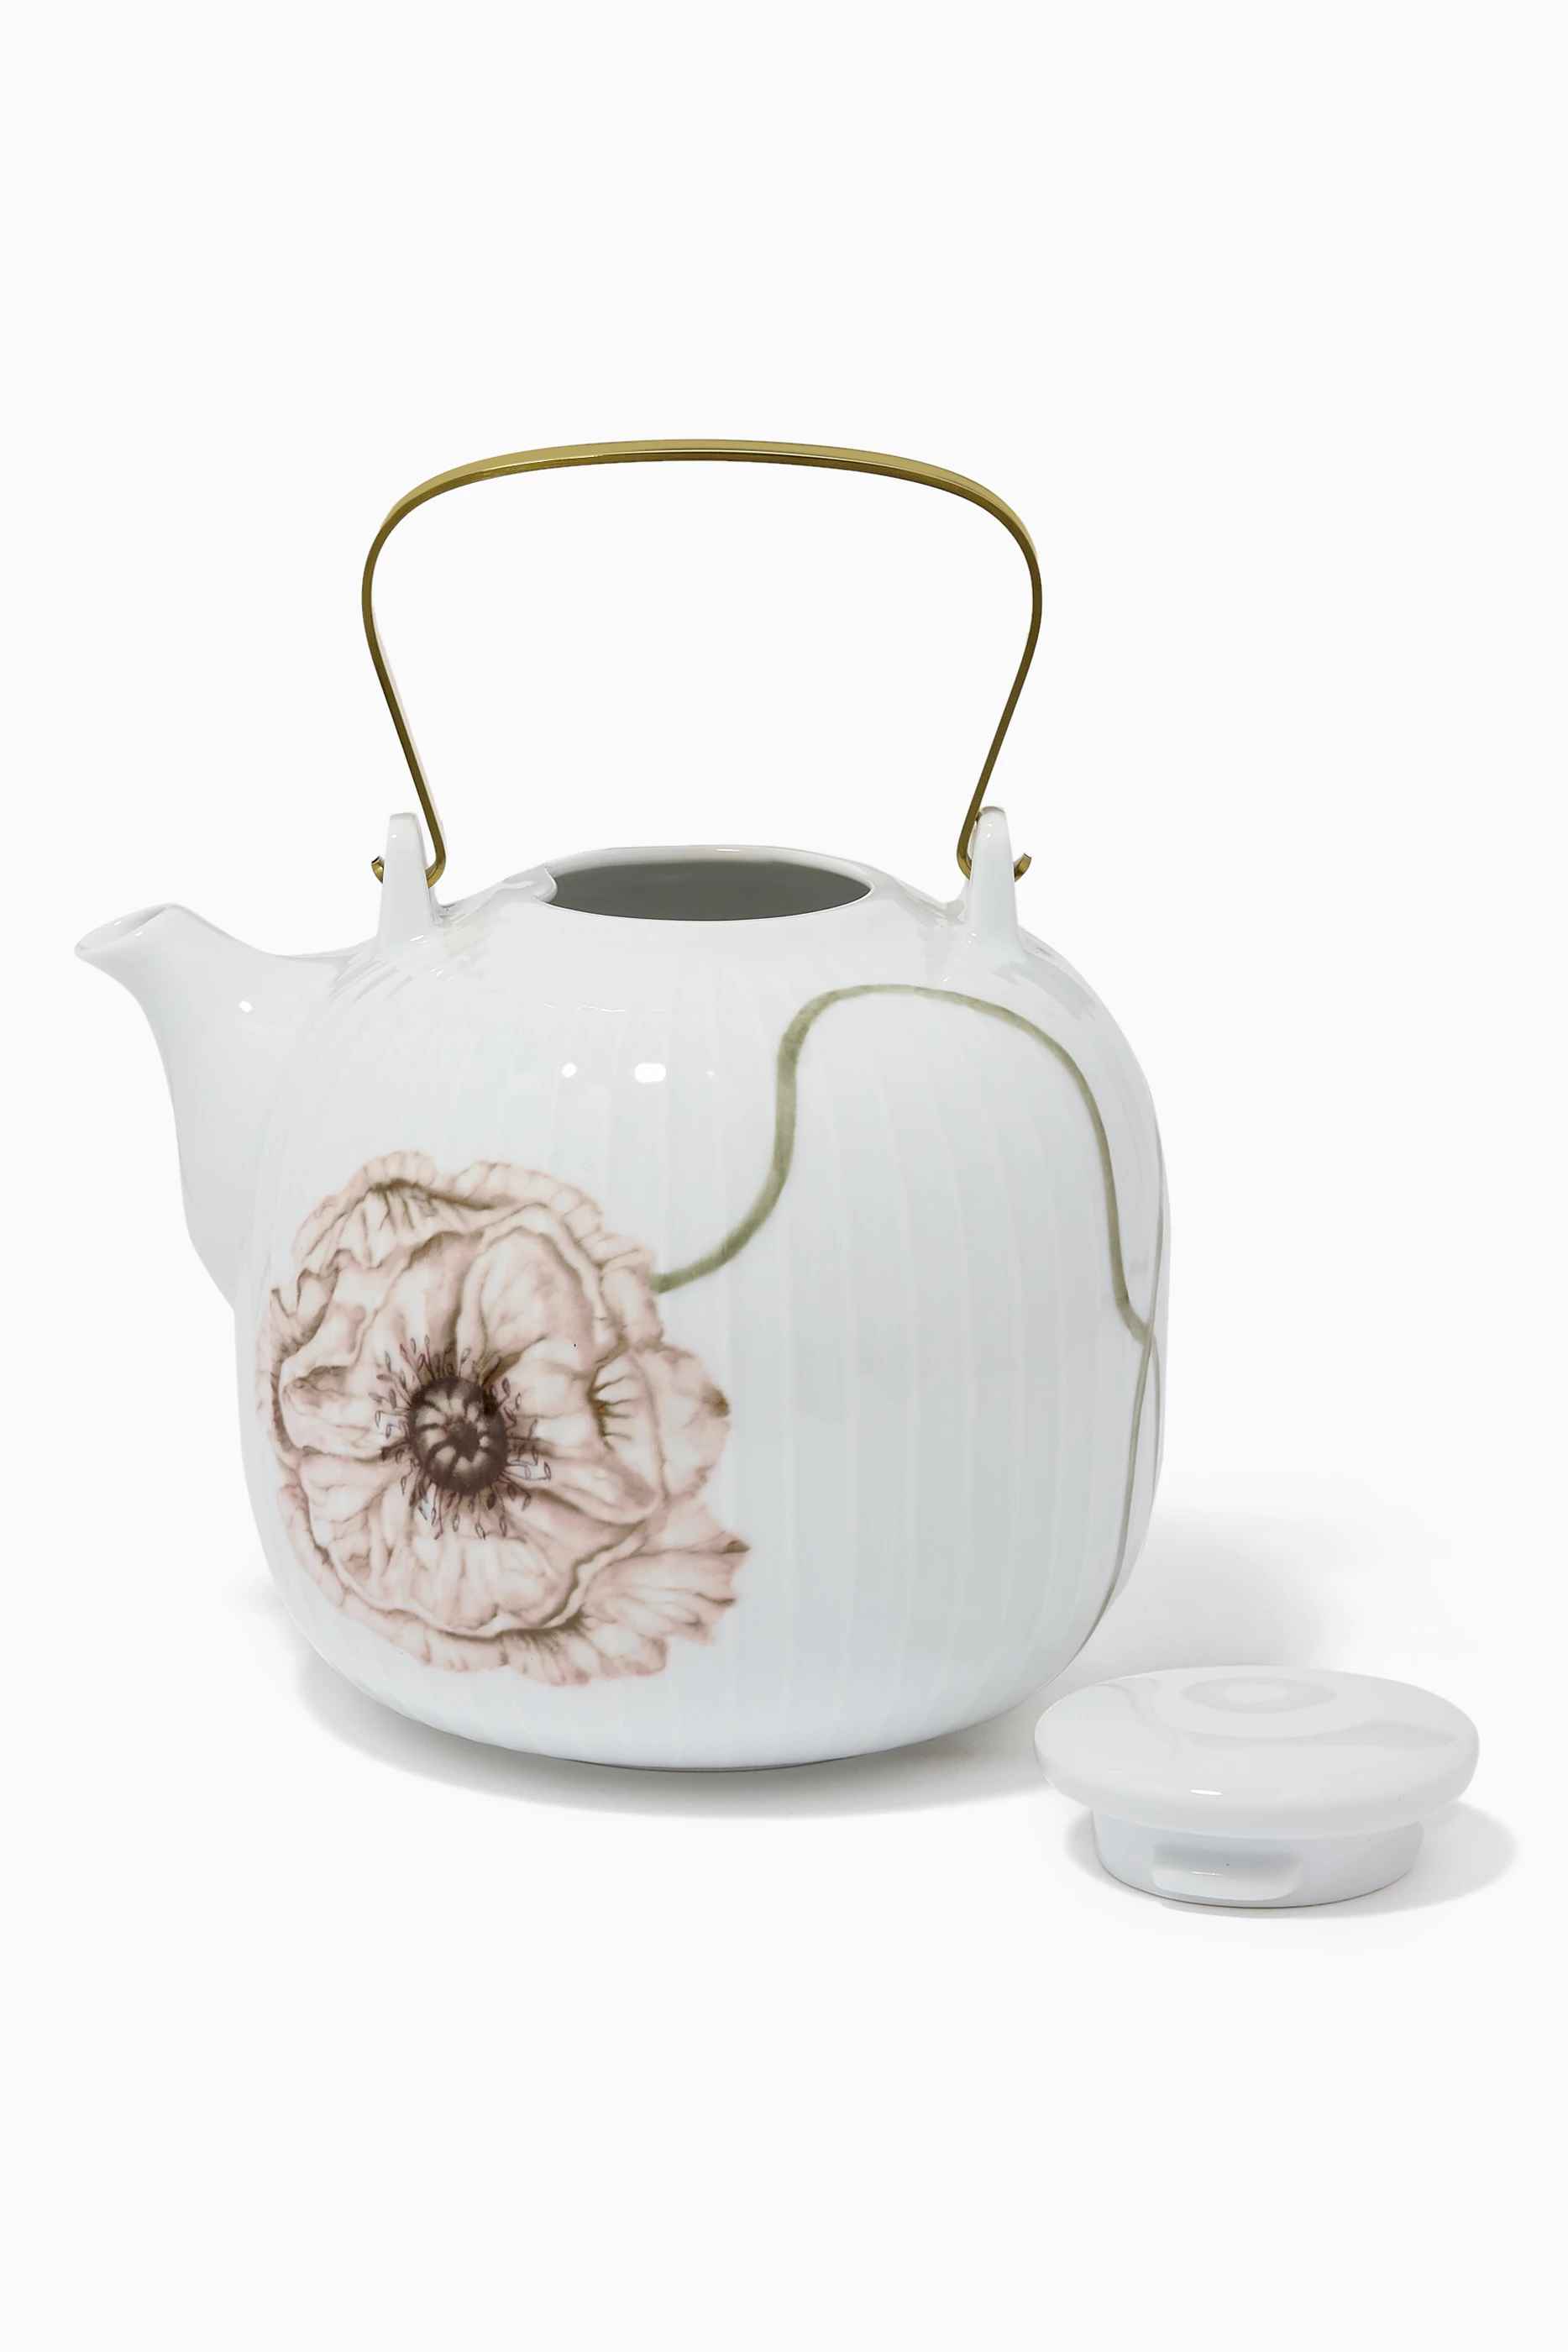 Kahler Hammershøi Poppy Teapot 1,2 Ll White W. Deco